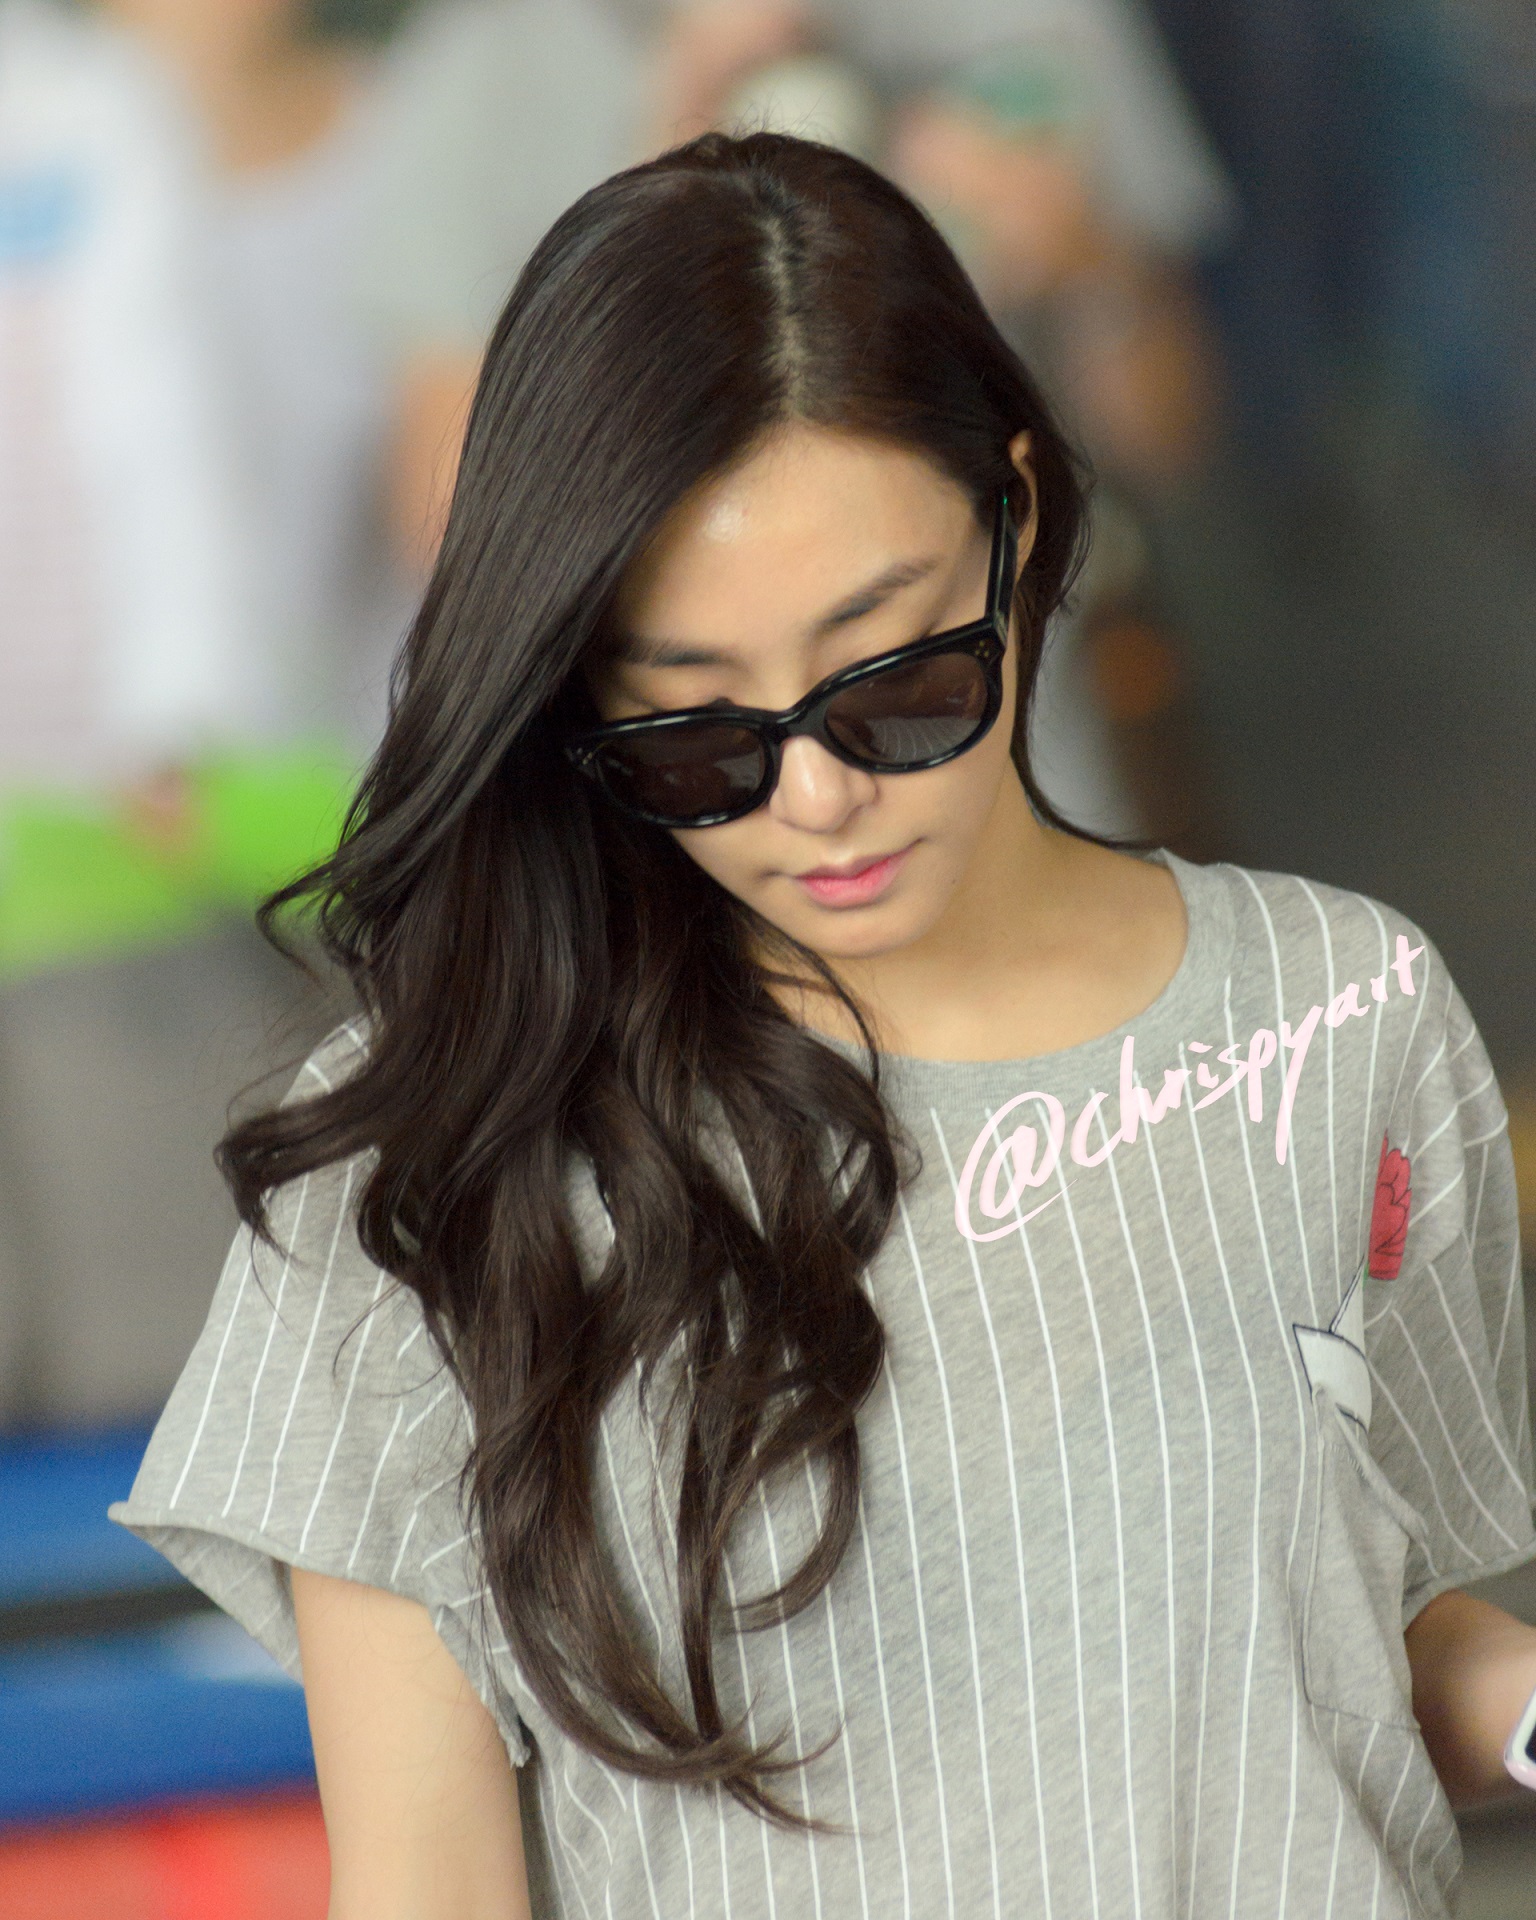 [PIC][18-08-2015]Tiffany trở về Hàn Quốc vào chiều nay Dsc_6271-kopie